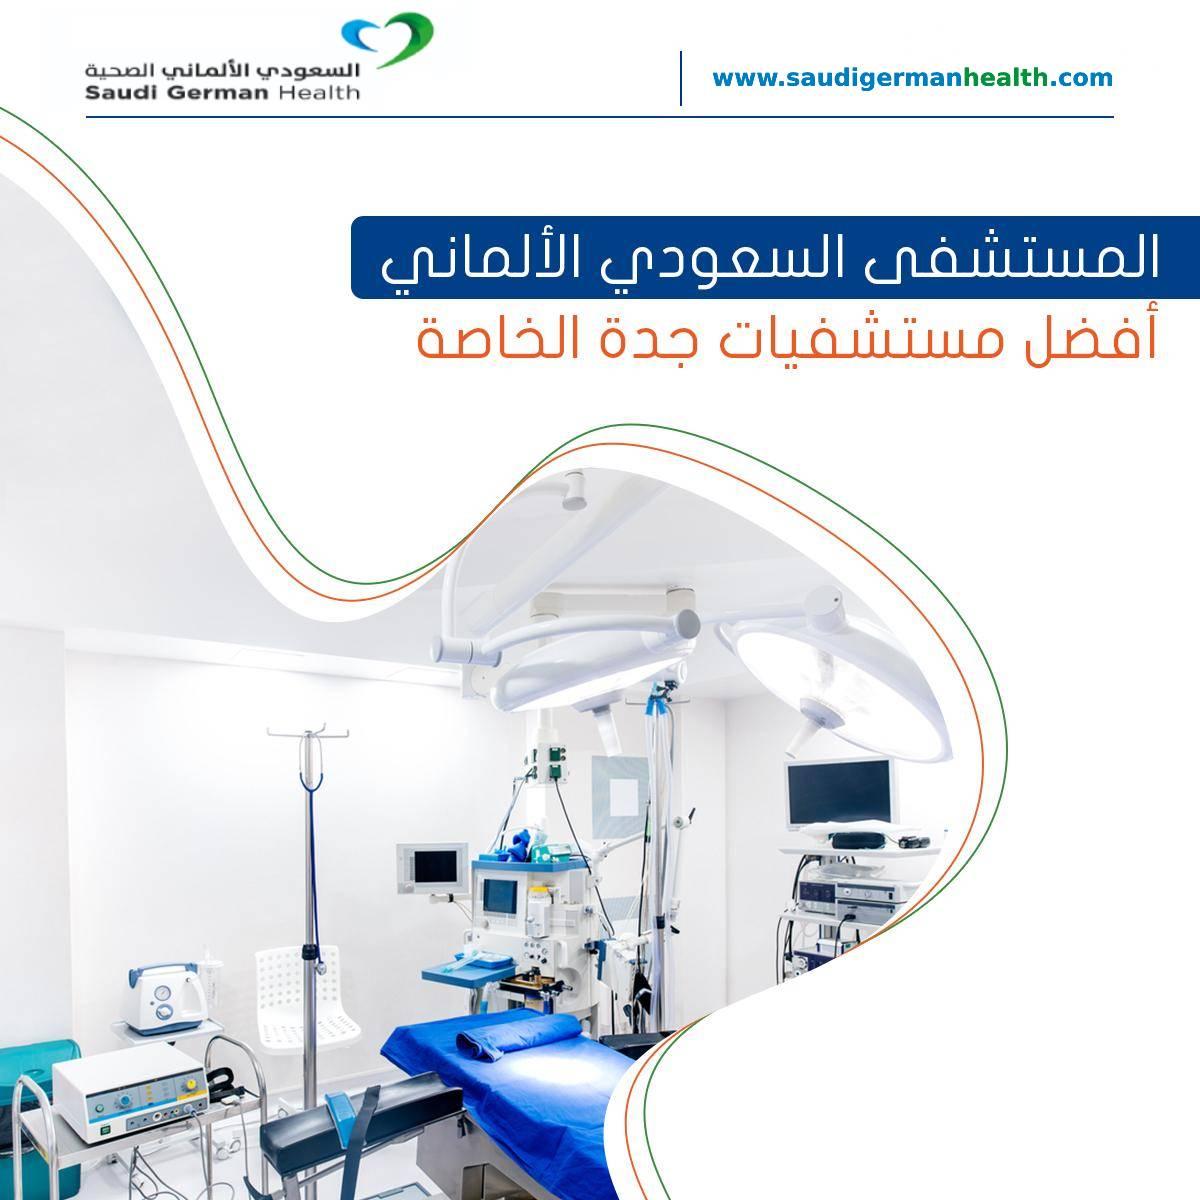 المستشفى السعودي الألماني أفضل مستشفيات جدة الخاصة